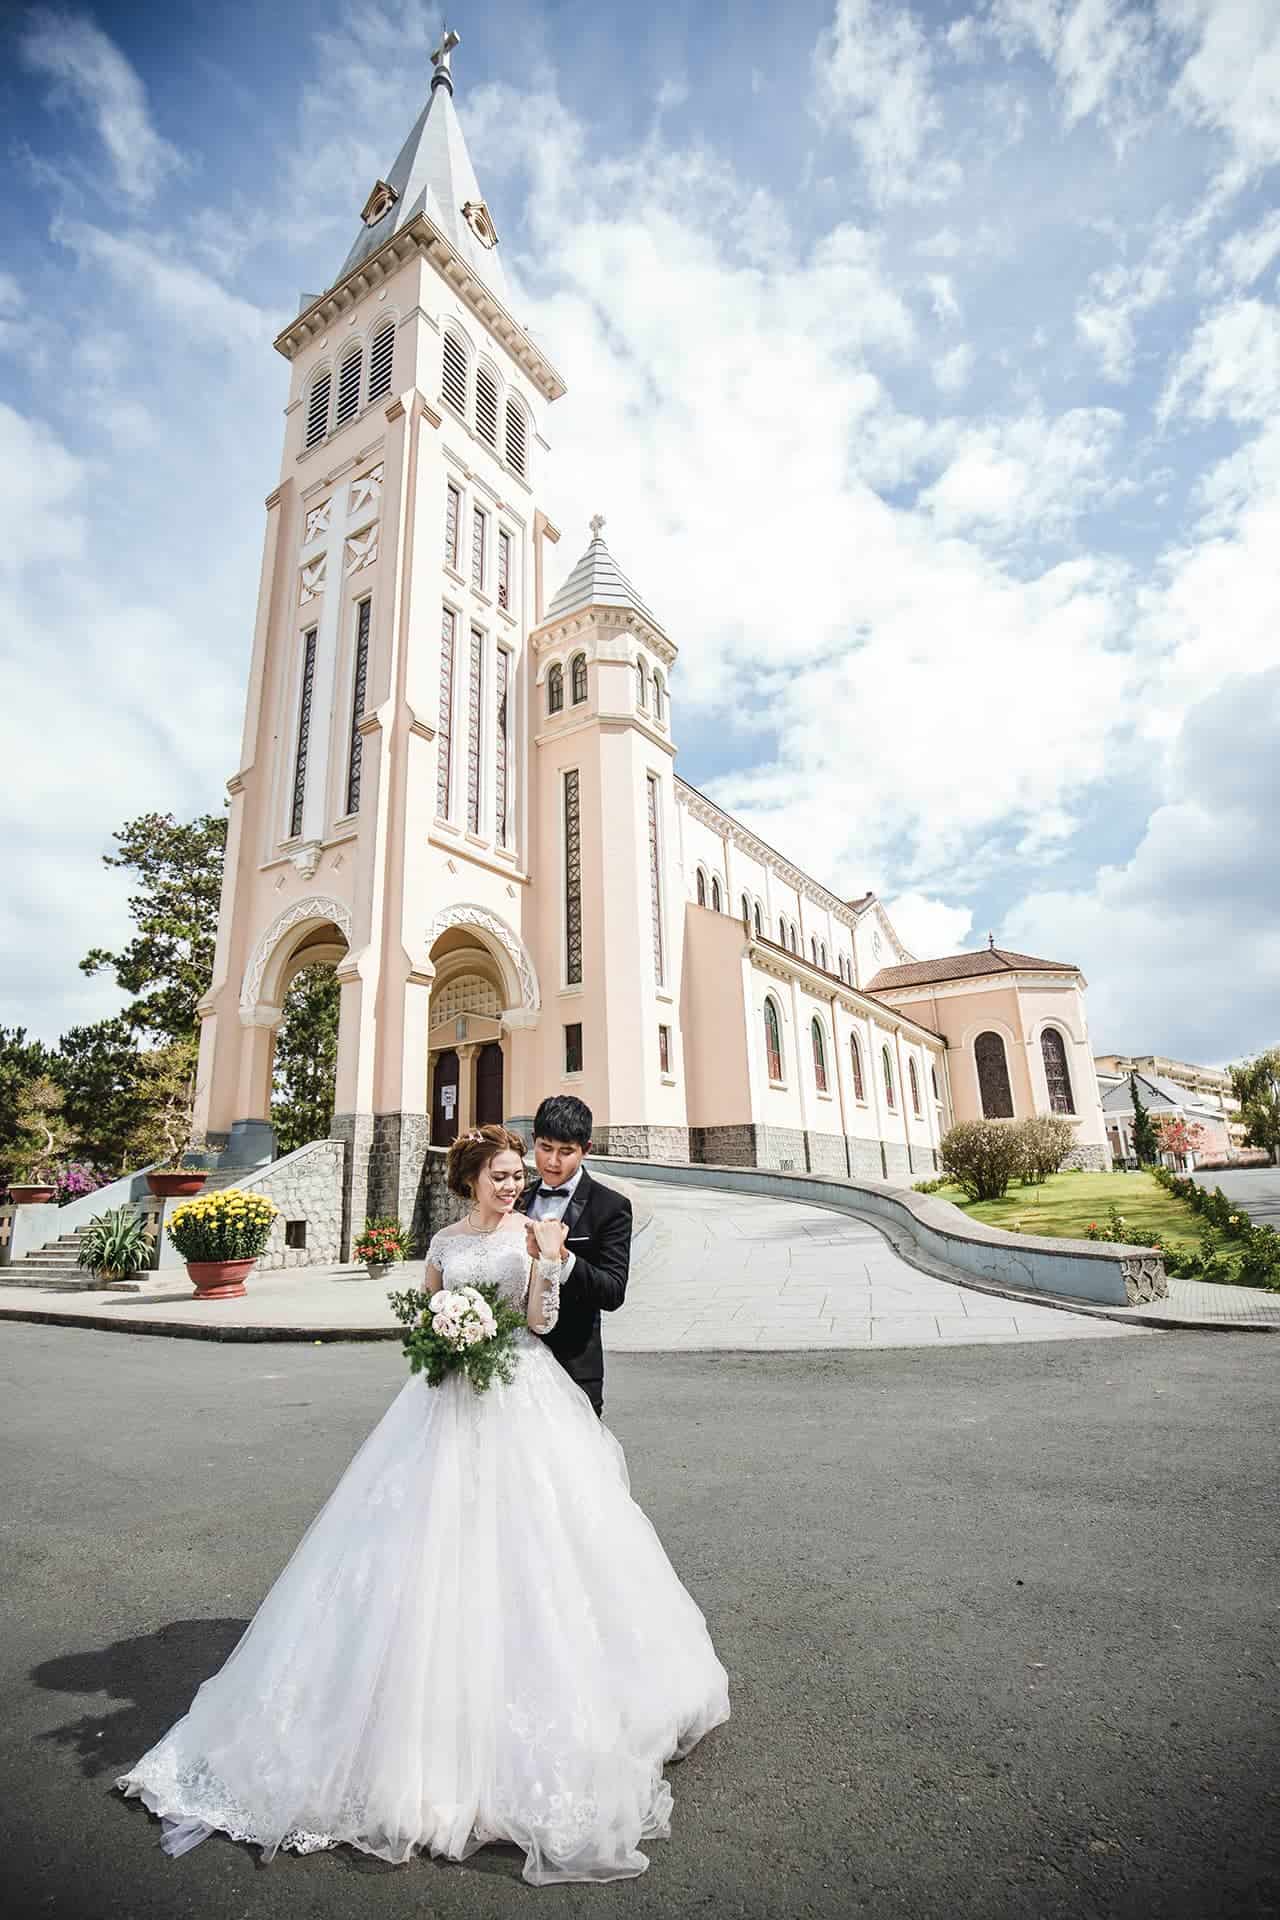 Nhà thờ Chánh Tòa Đà Lạt cũng là địa điểm yêu thích của các cặp đôi chụp hình cưới.